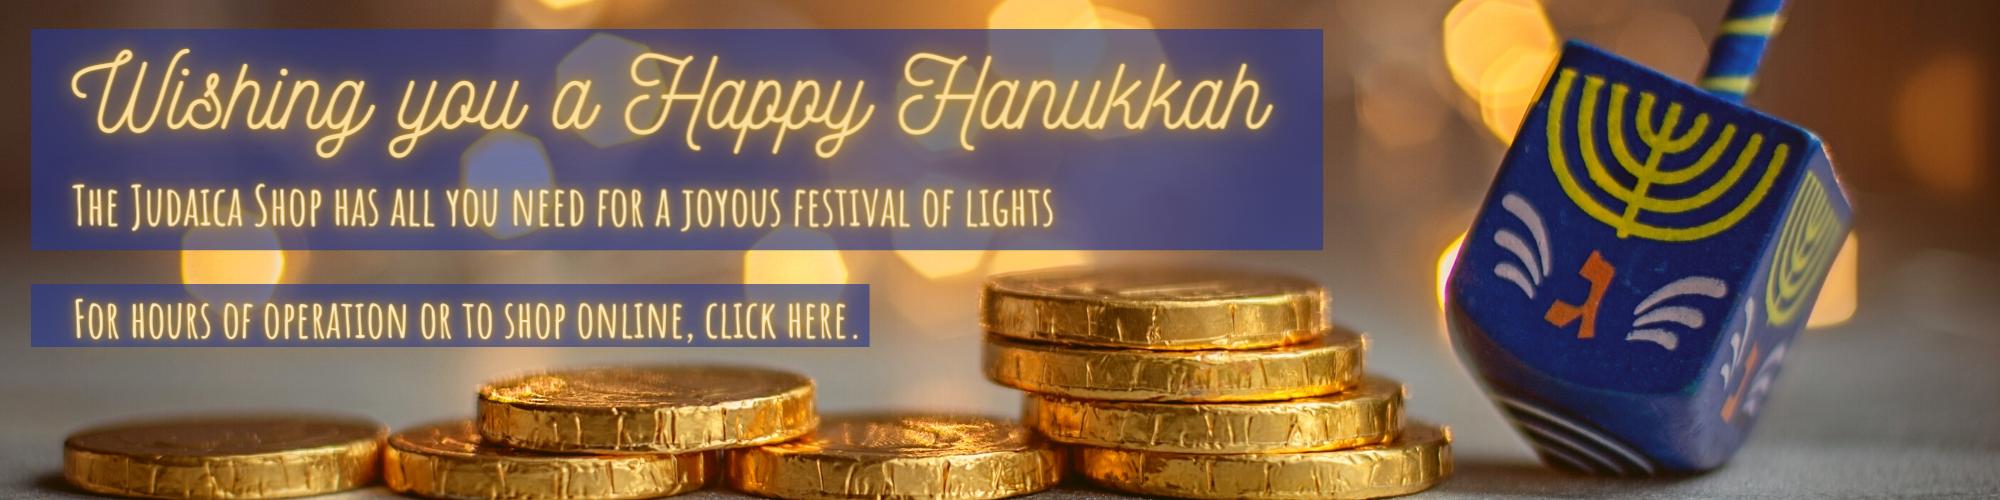 Judaica Shop Banner Hanukkah Page Version (2500 × 500 px)